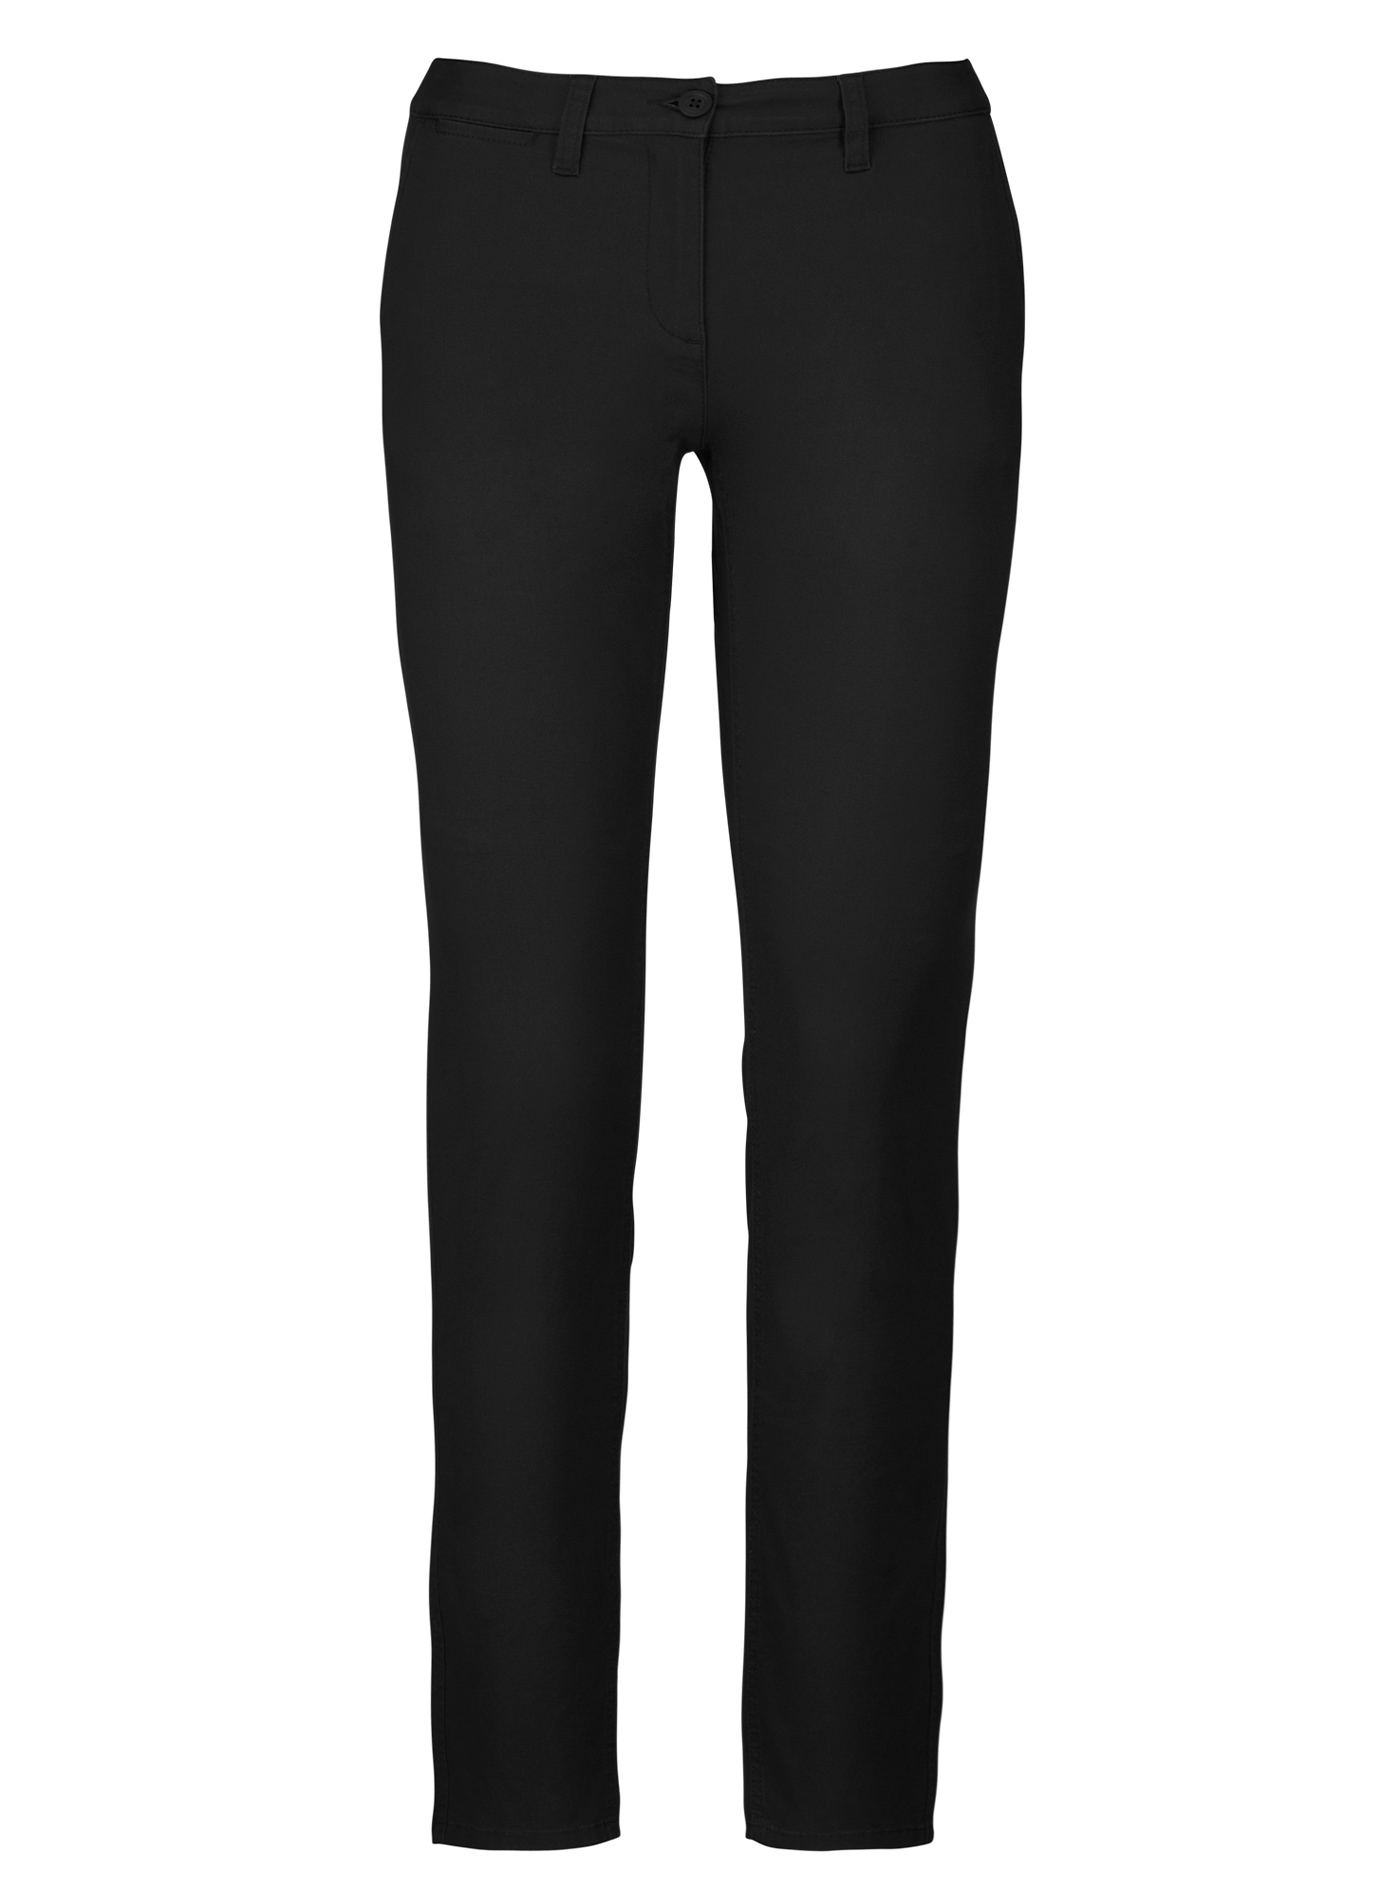 Dámské pohodlné kalhoty Kariban Chino - černá 44